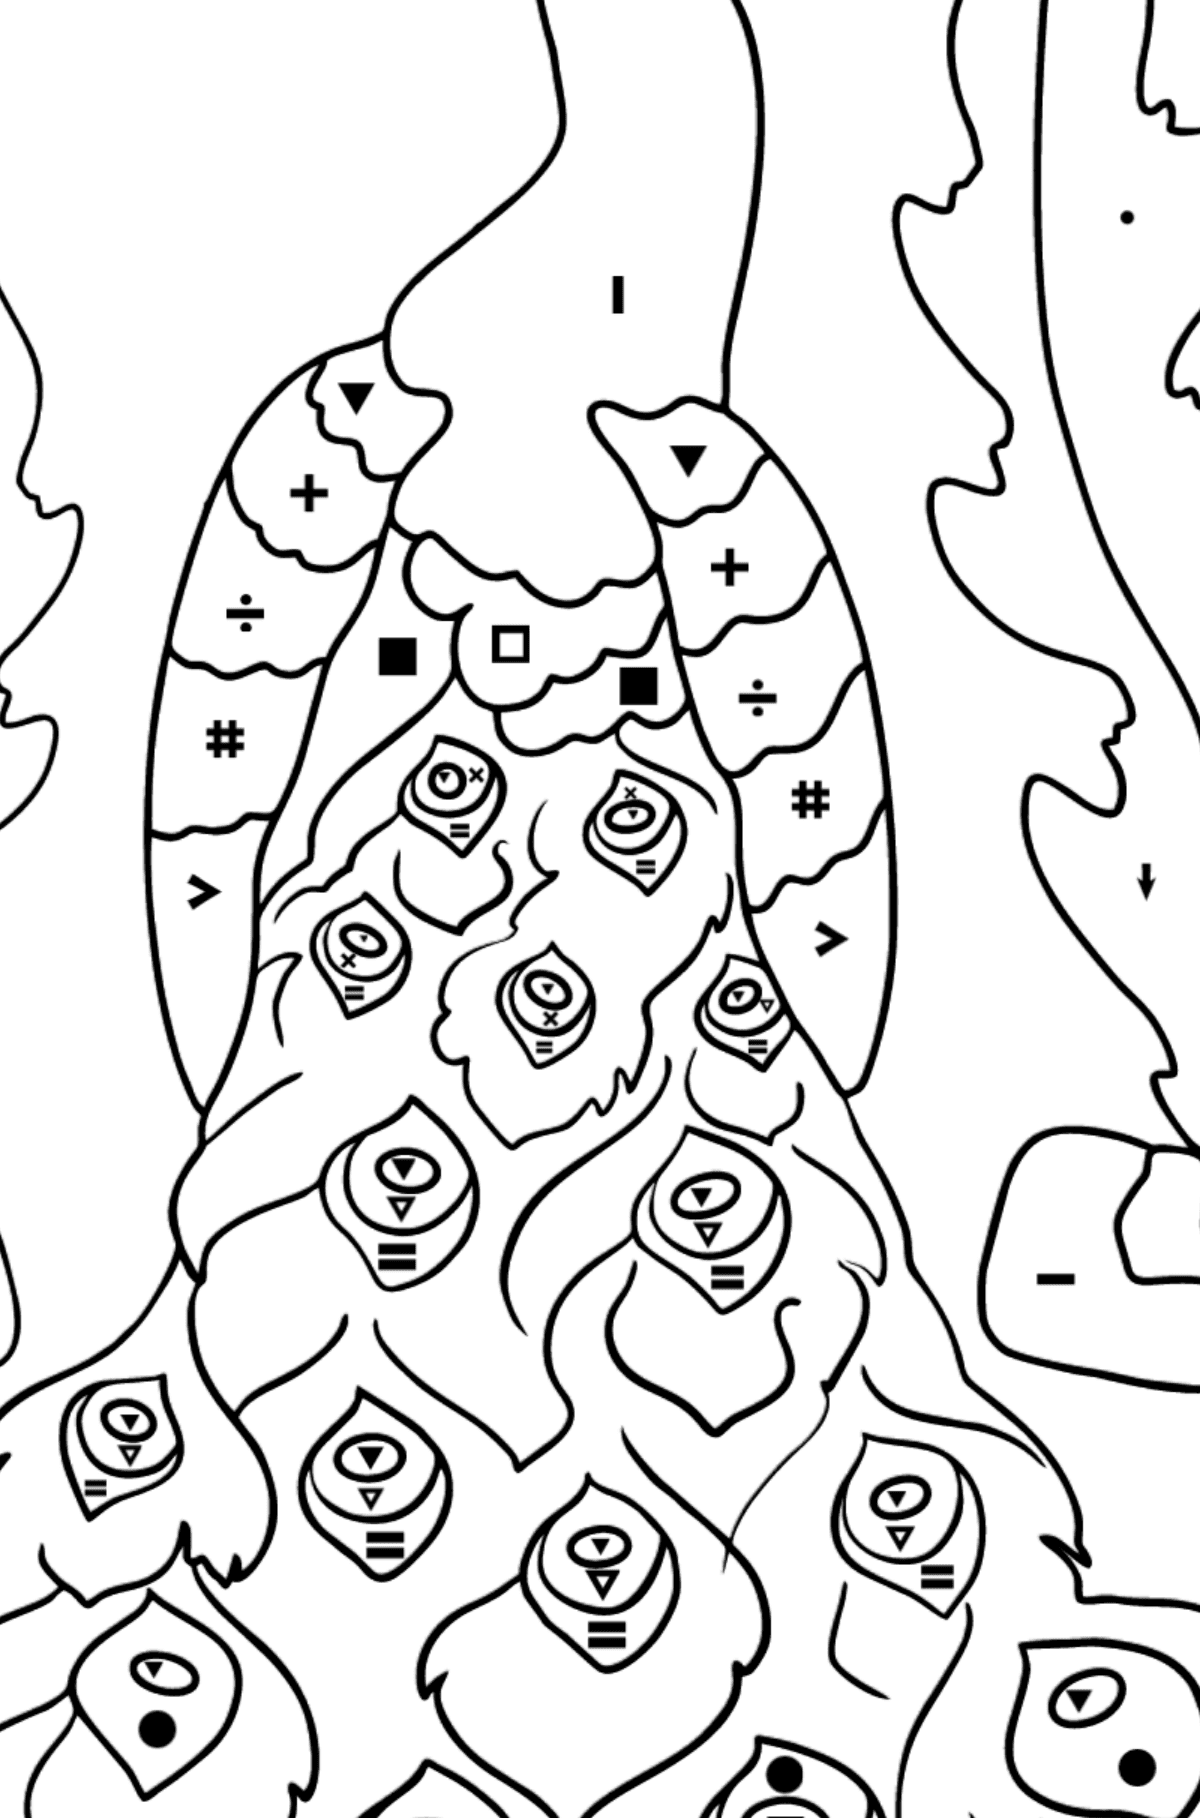 Kleurplaat pauw (moeilijk) - Kleuren met symbolen voor kinderen